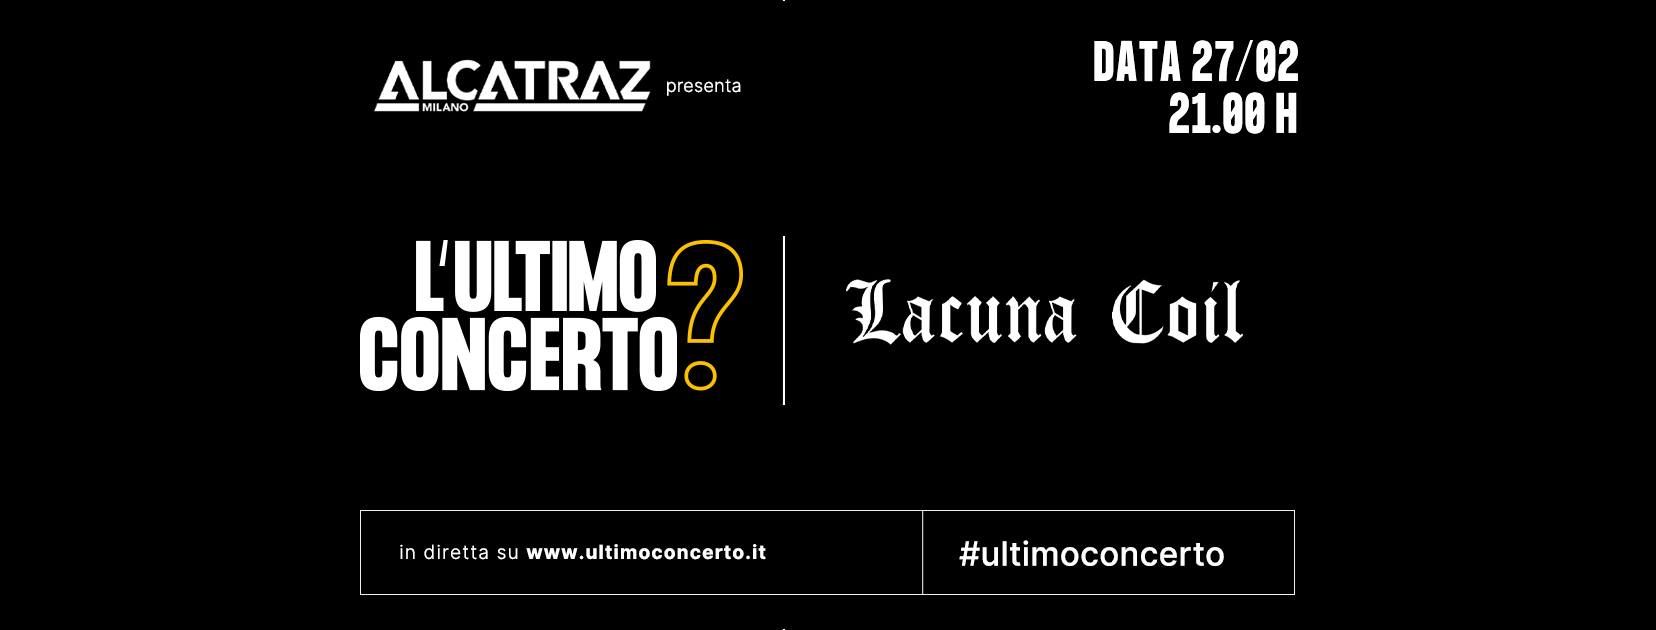 Lacuna Coil, L'Ultimo Concerto? Discoteca Alcatraz Milano